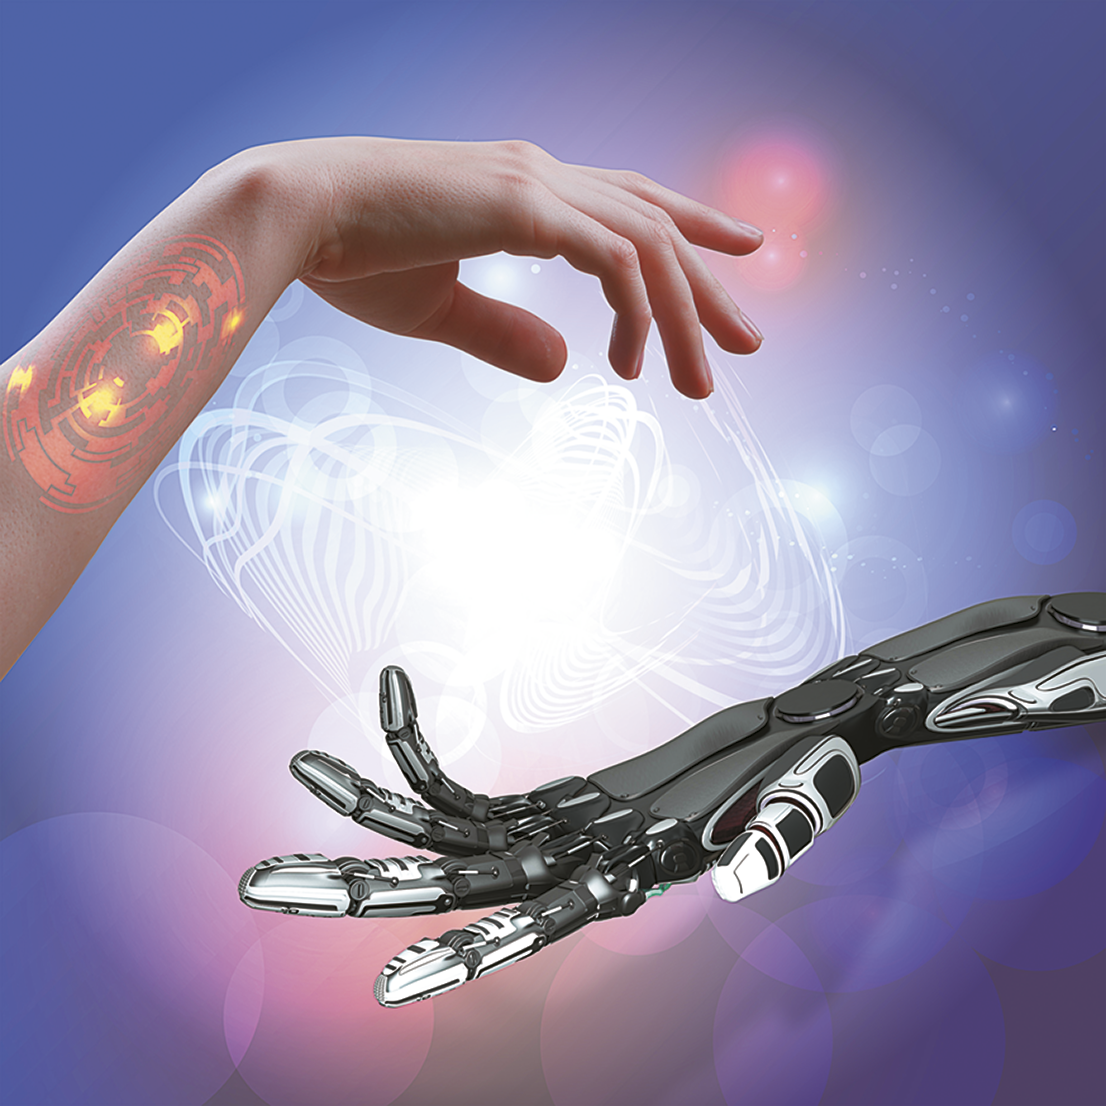 Ilustração. Uma mão humana sobre uma mão robótica. Há uma marca luminosa no braço da pessoa.